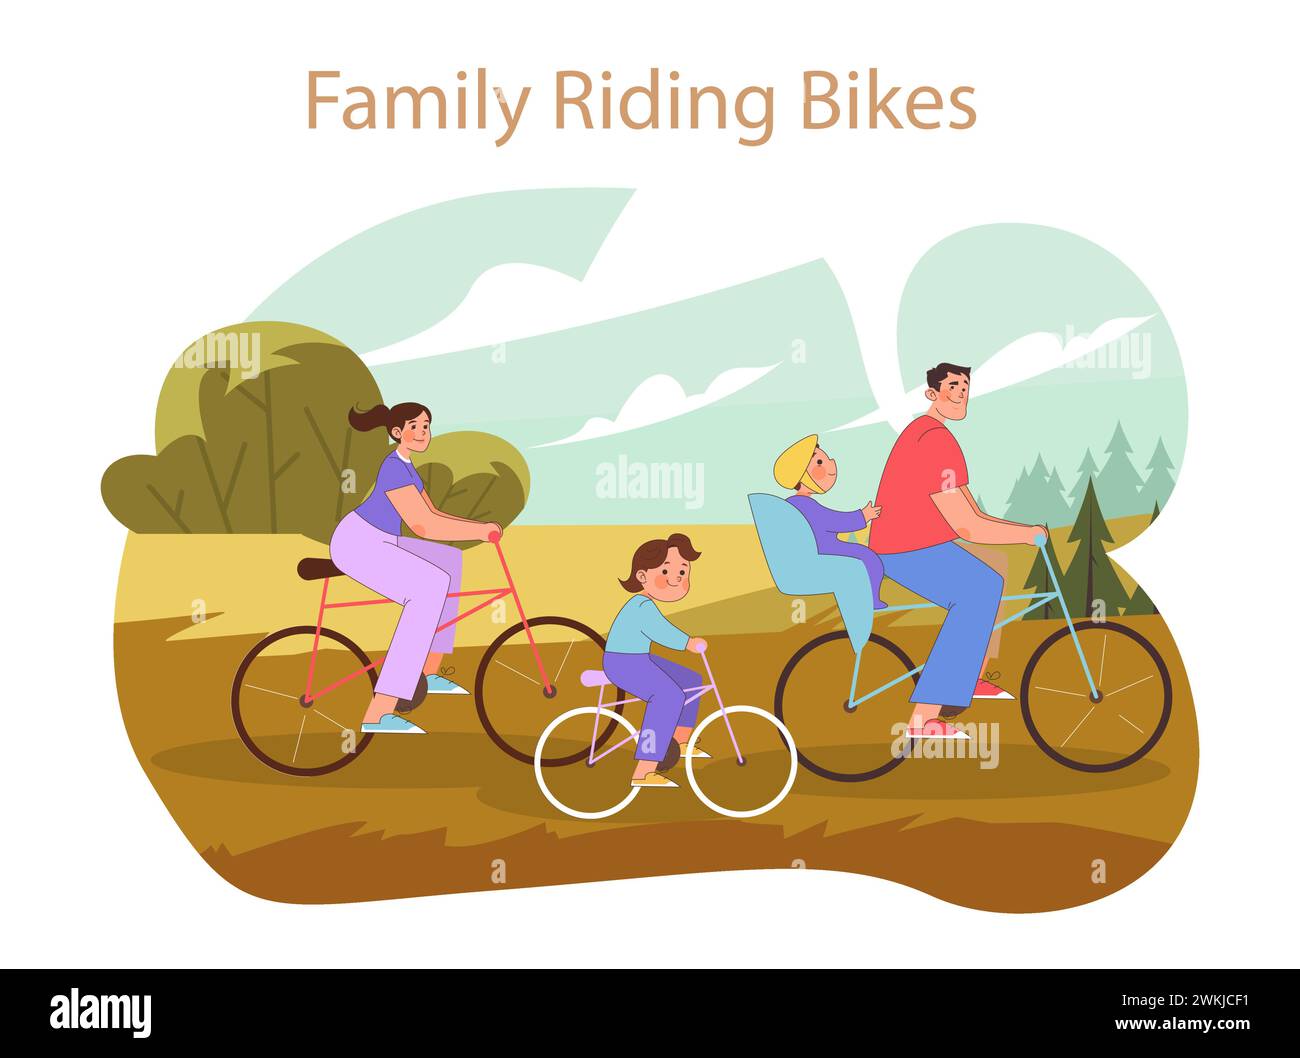 Concetto di Family Riding Bikes. Una sana avventura all'aria aperta con i tuoi cari in bicicletta insieme nella natura. Illustrazione Vettoriale